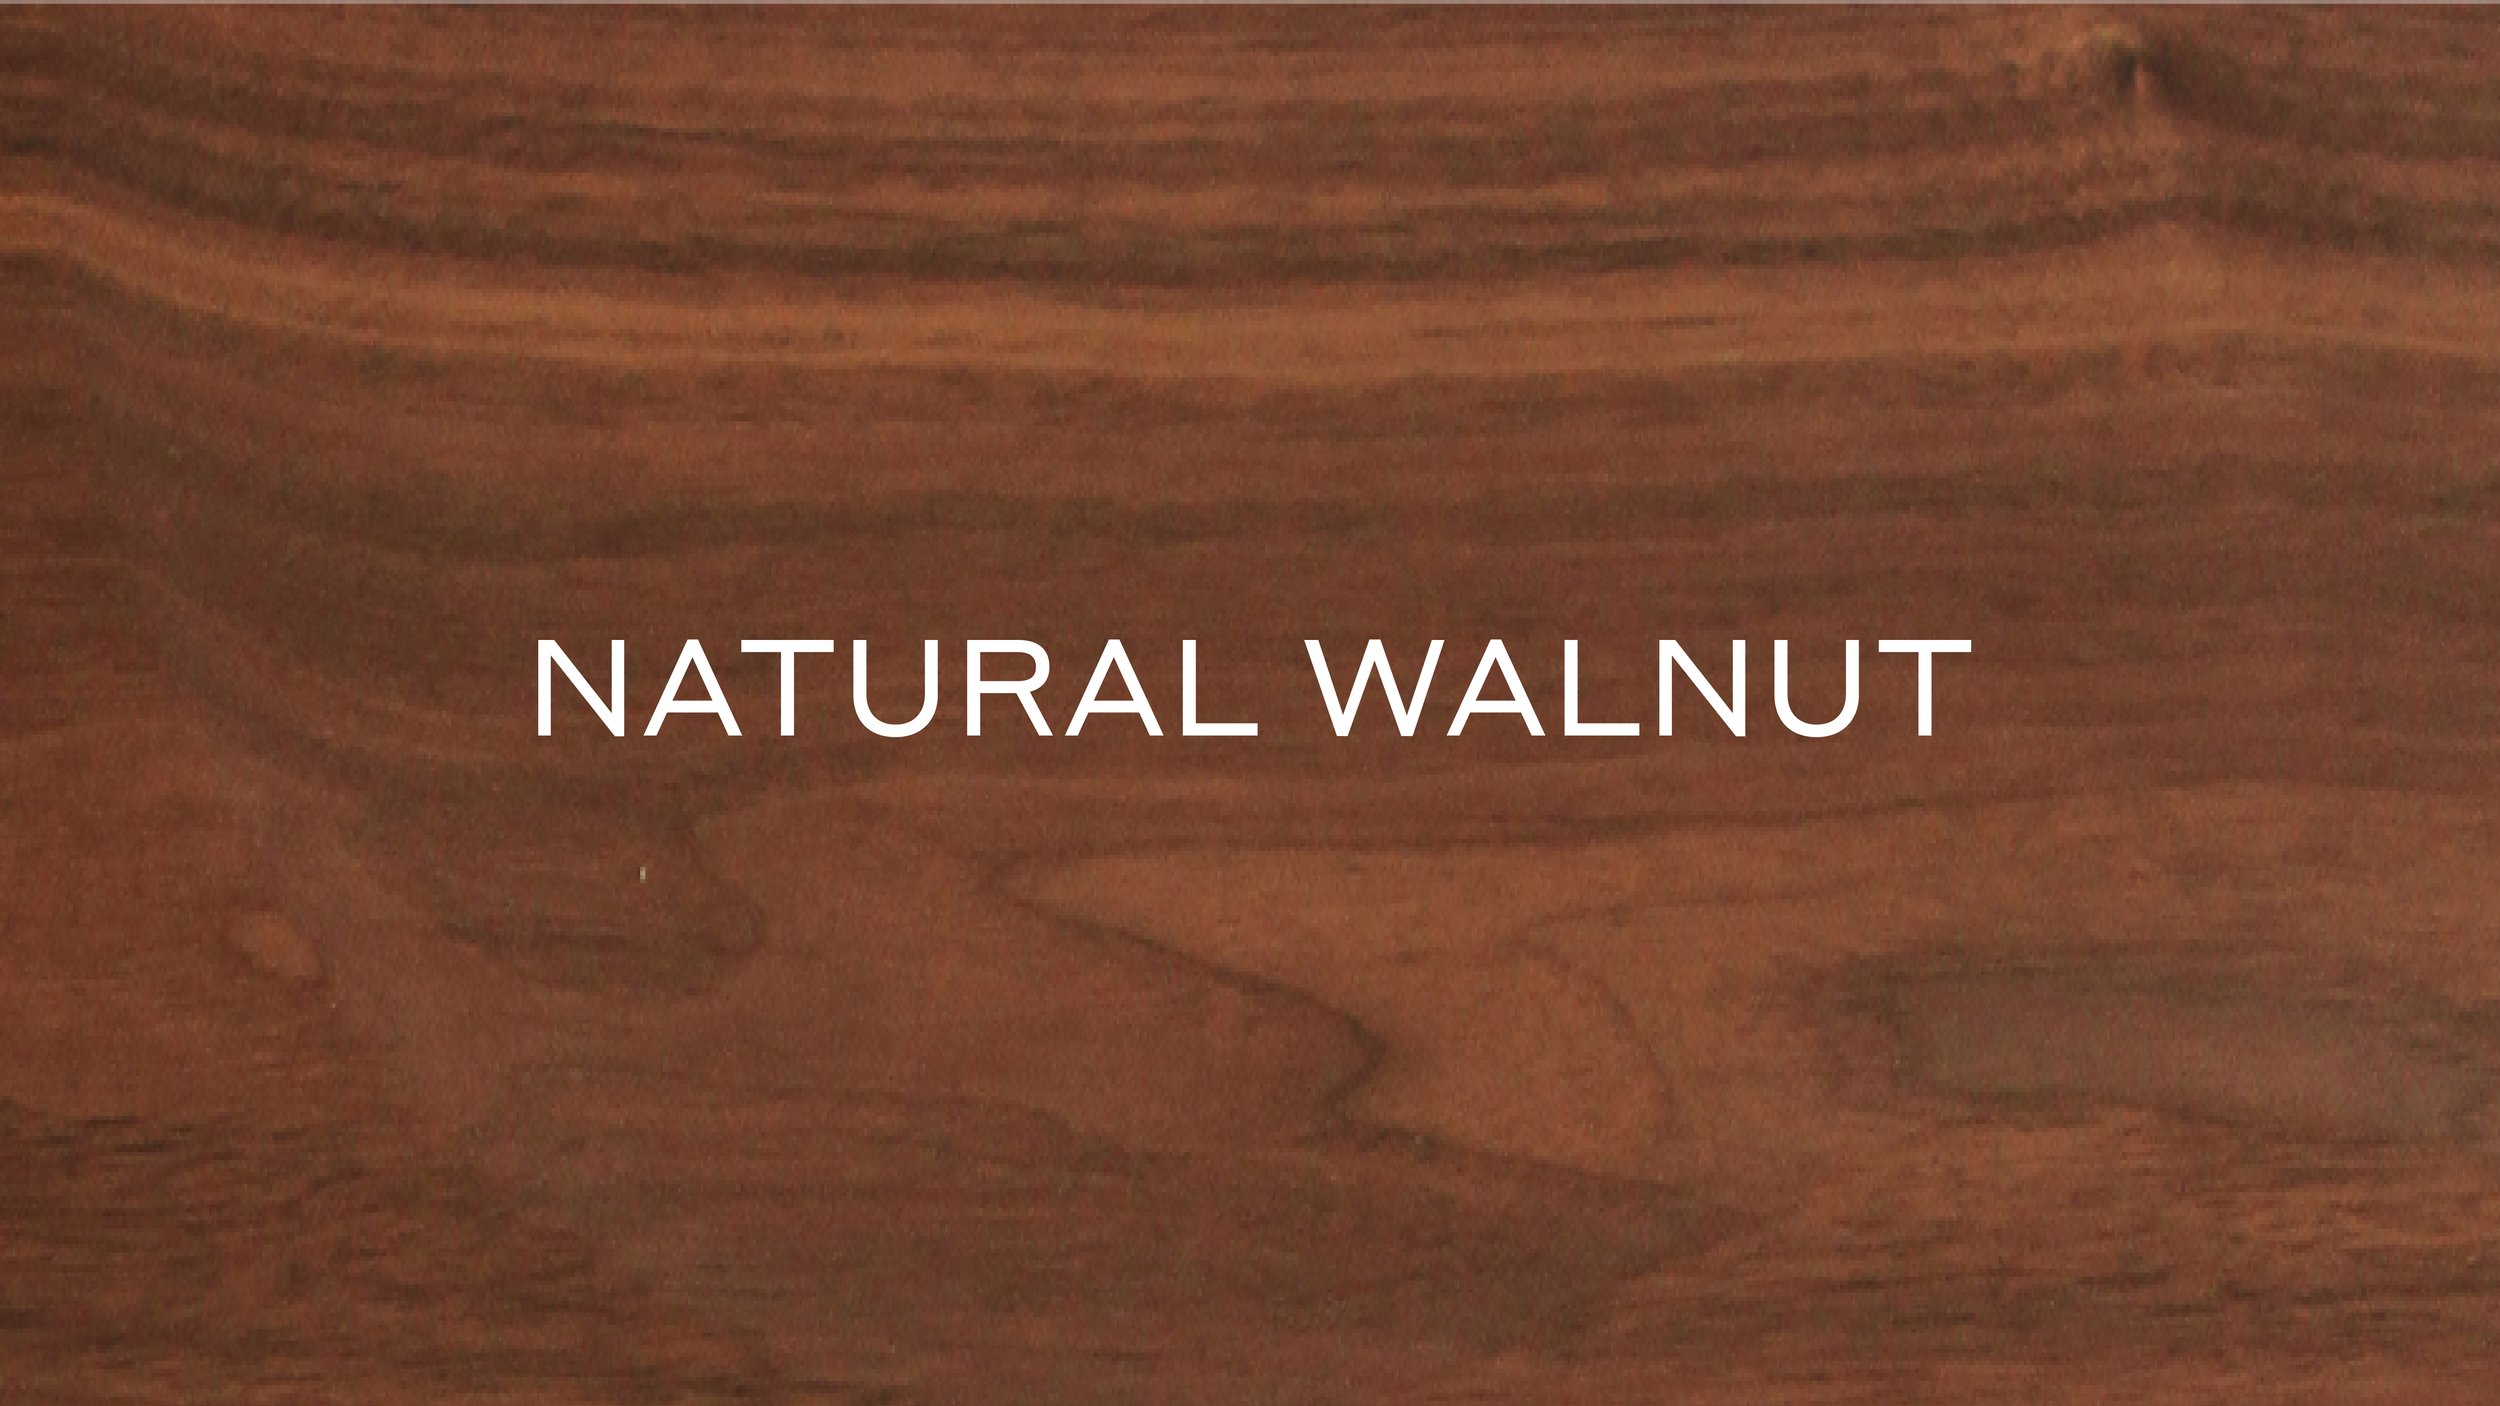 NATURAL WALNUT.jpg